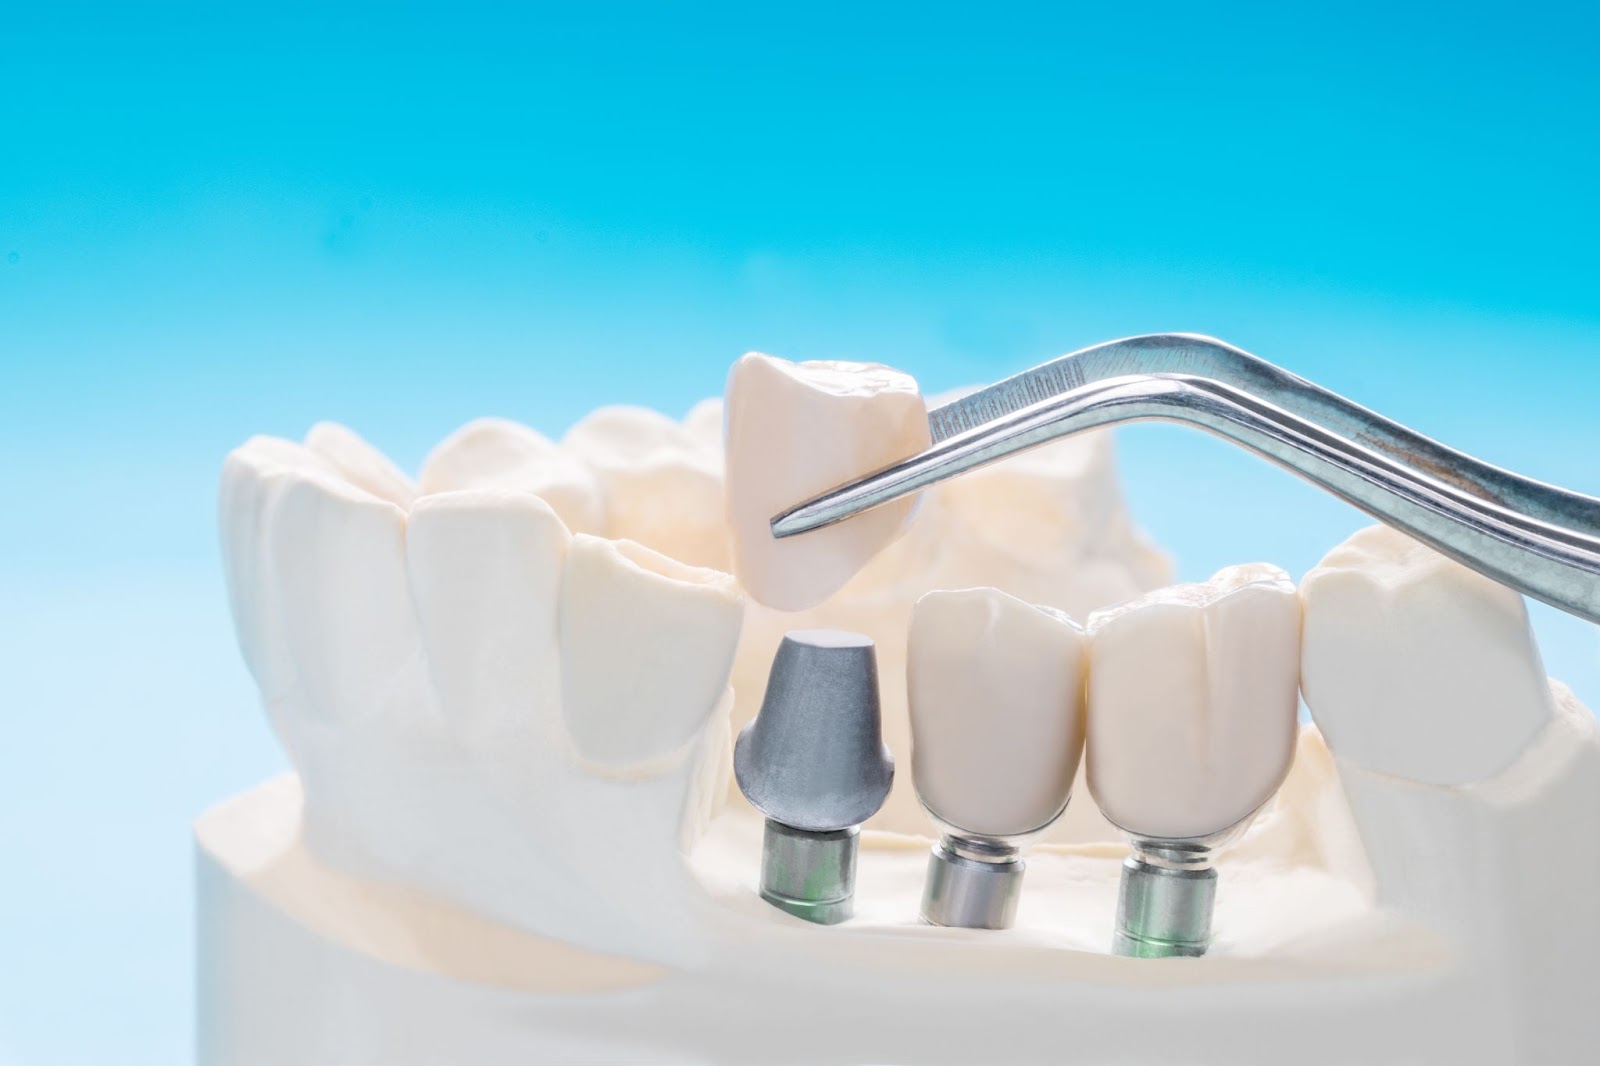 Impianti dentali che sostituiscono un'intera arcata di denti mancanti